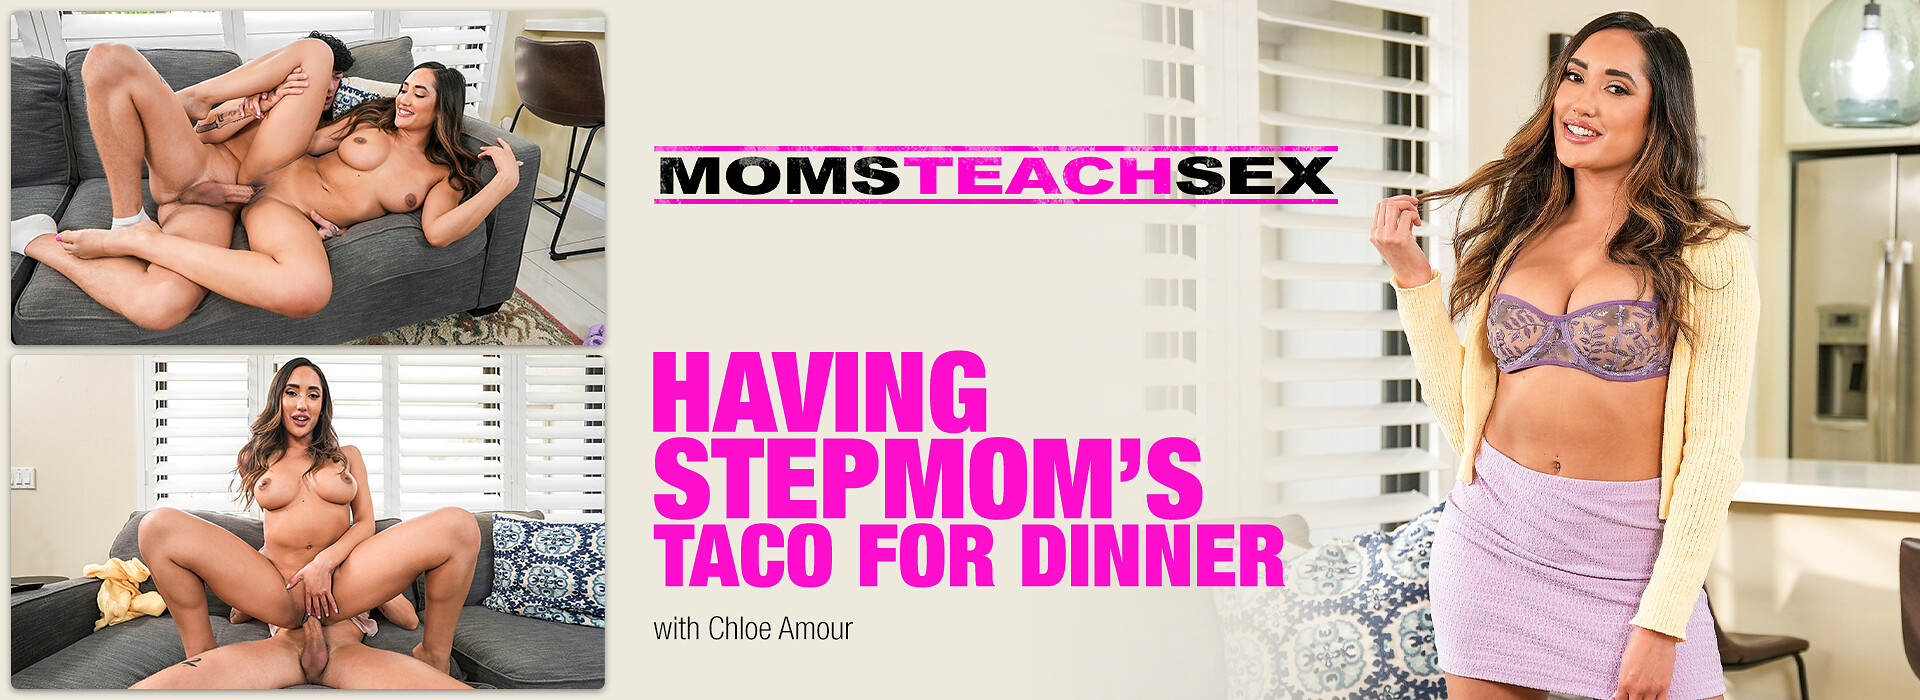 Having Stepmoms Taco For Dinner